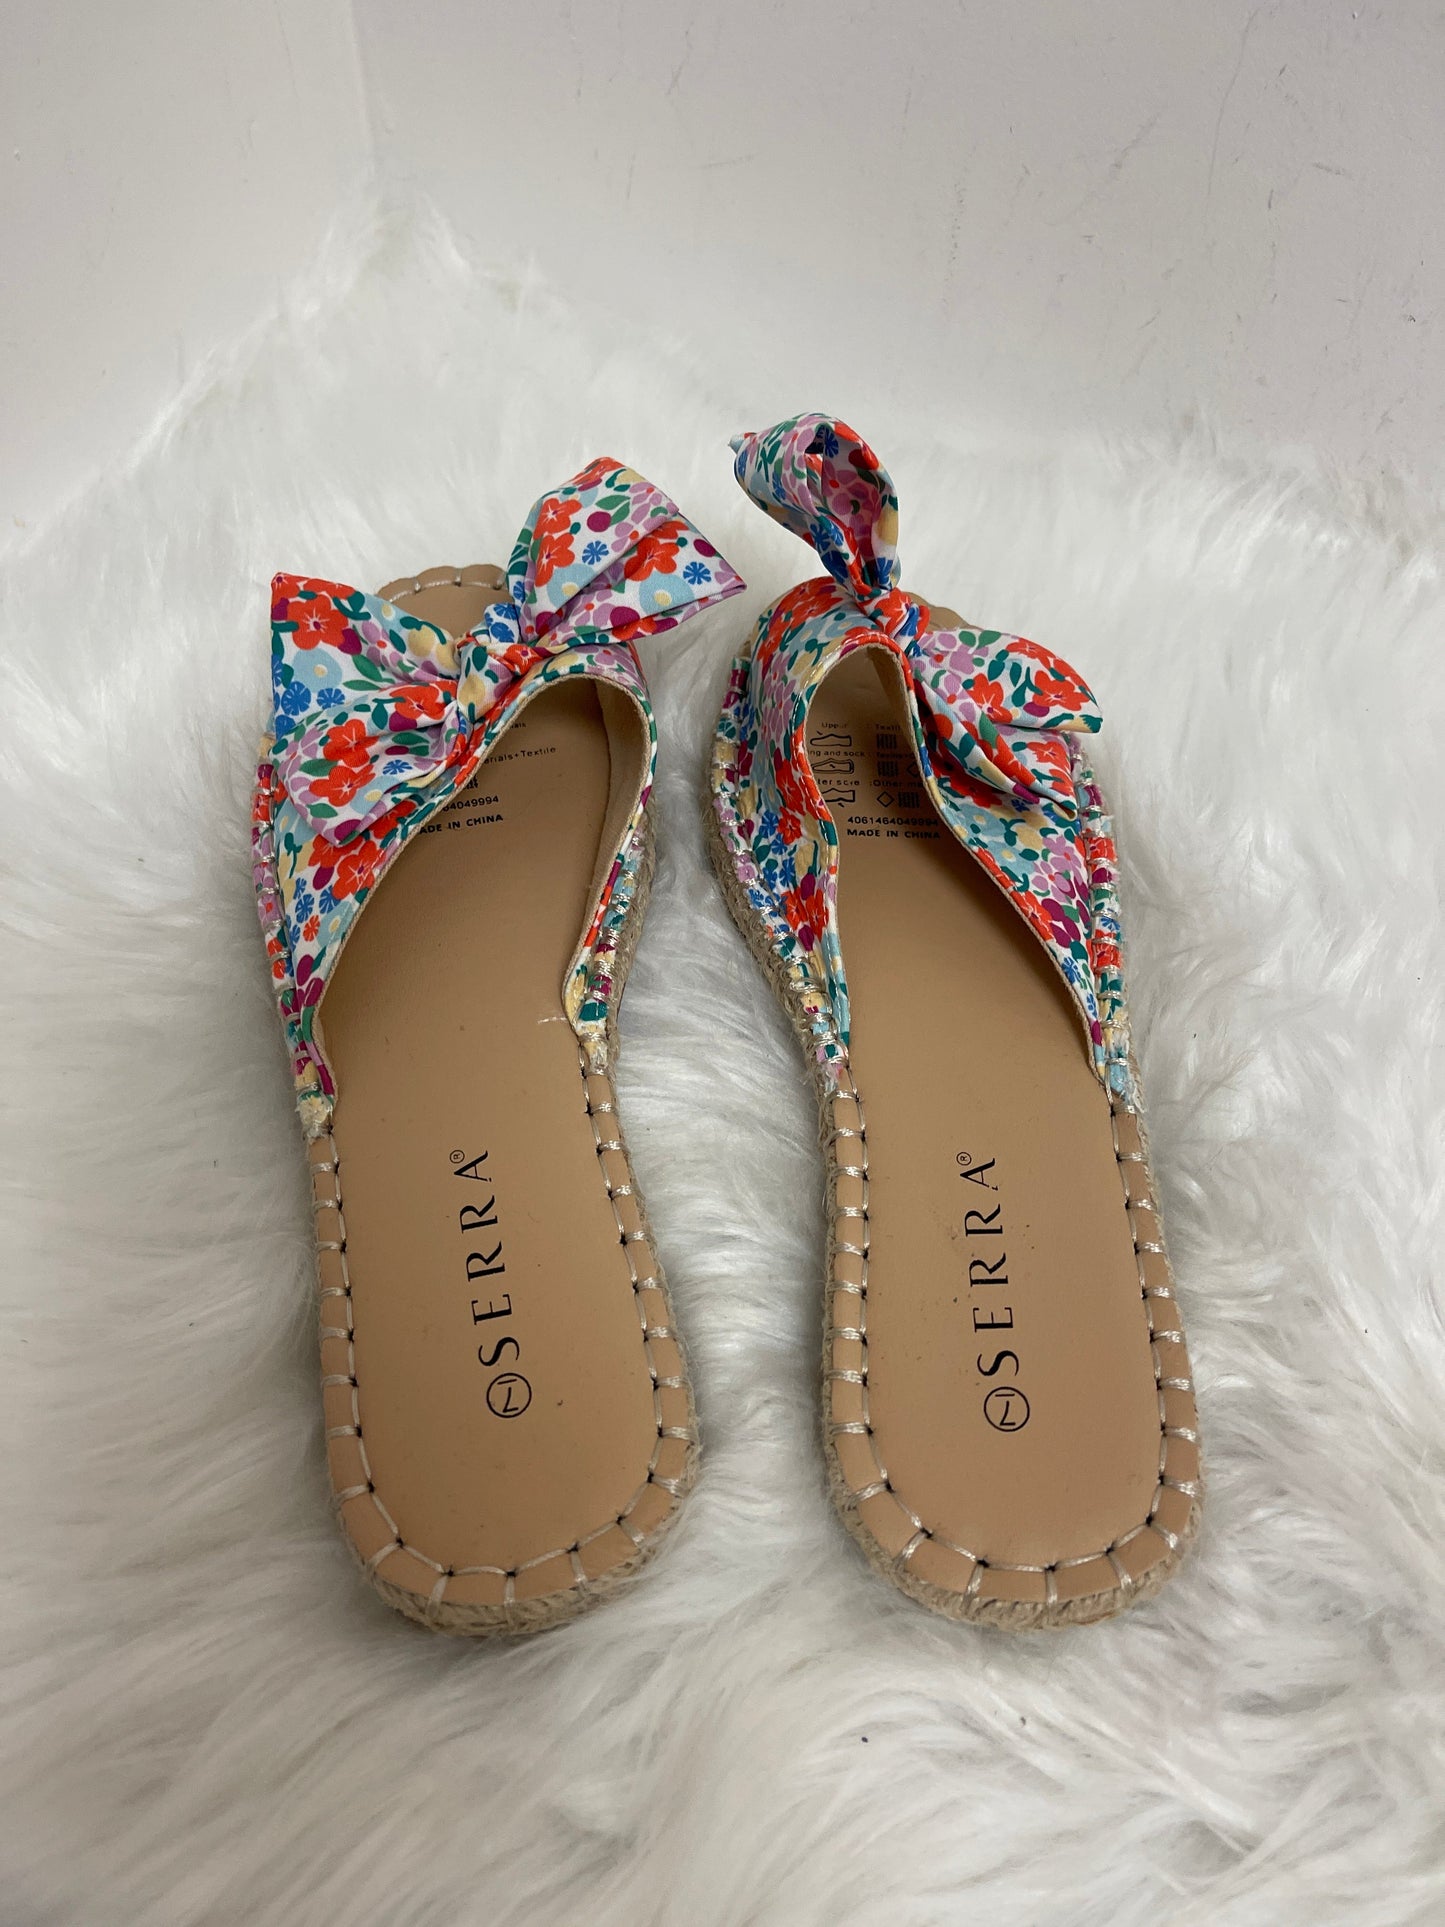 Floral Print Sandals Flats Serra, Size 7